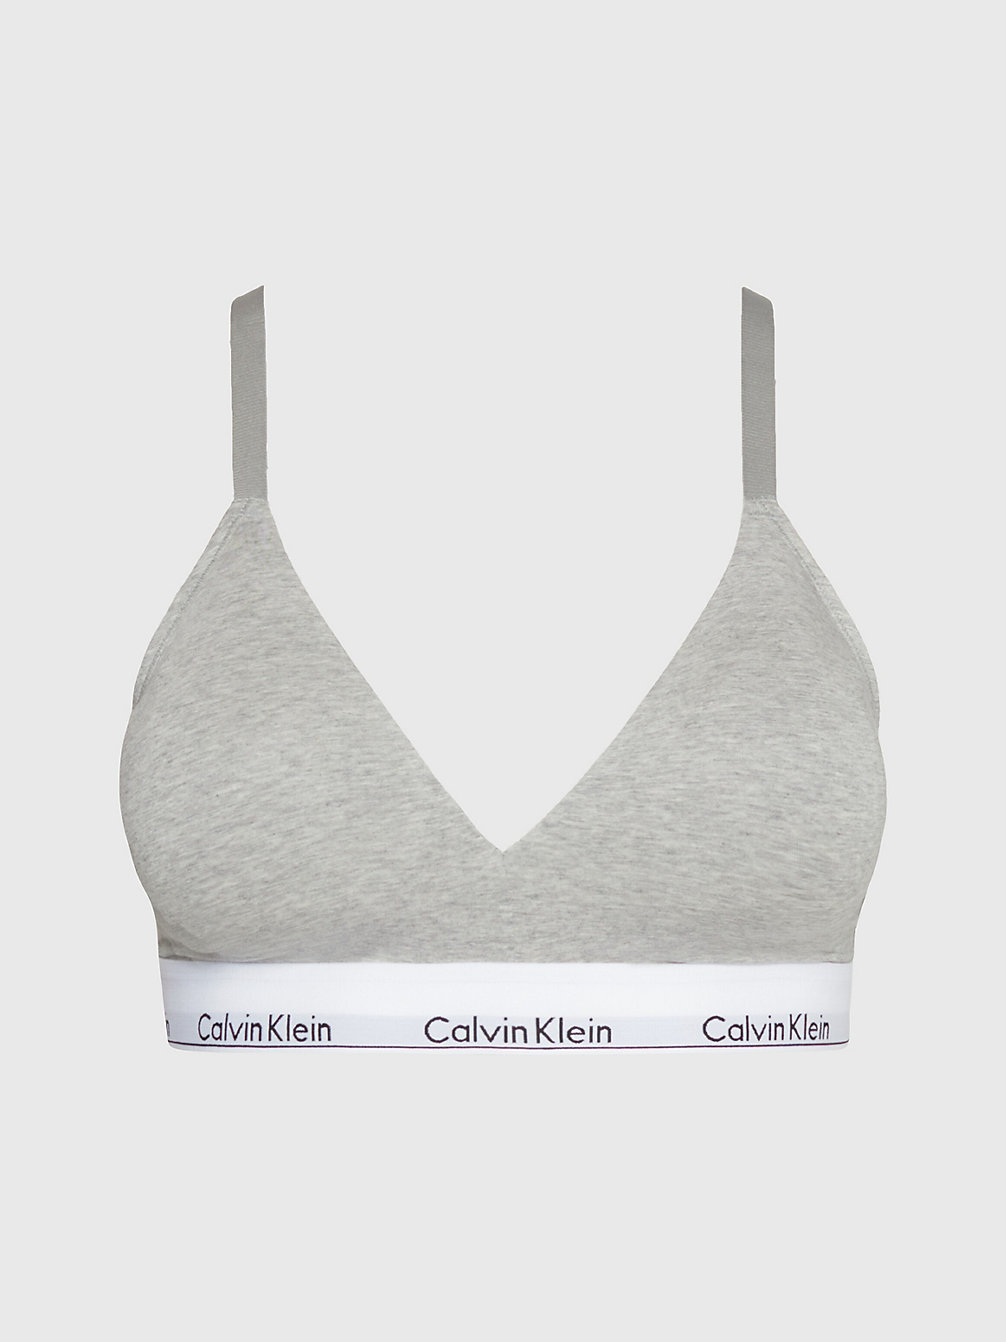 GREY HEATHER Plus Size Triangle Bra - Modern Cotton undefined women Calvin Klein